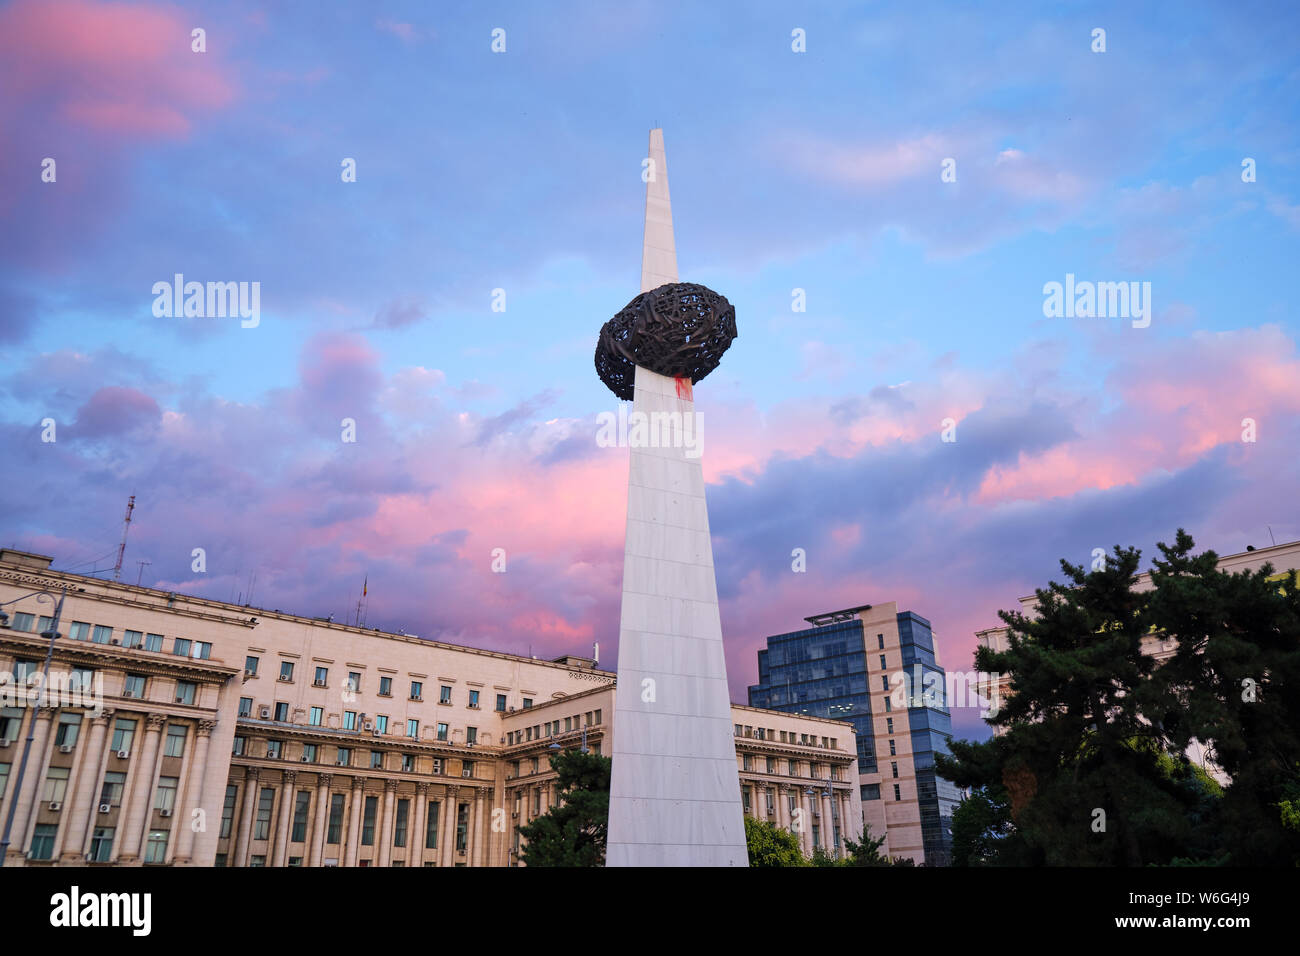 Bucarest, Roumanie - 24 juillet 2019 : Mémorial de la Renaissance (Memorialul Renasterii) dans des couleurs de soleil rose/bleu. Ce grand monument en marbre honore t Banque D'Images